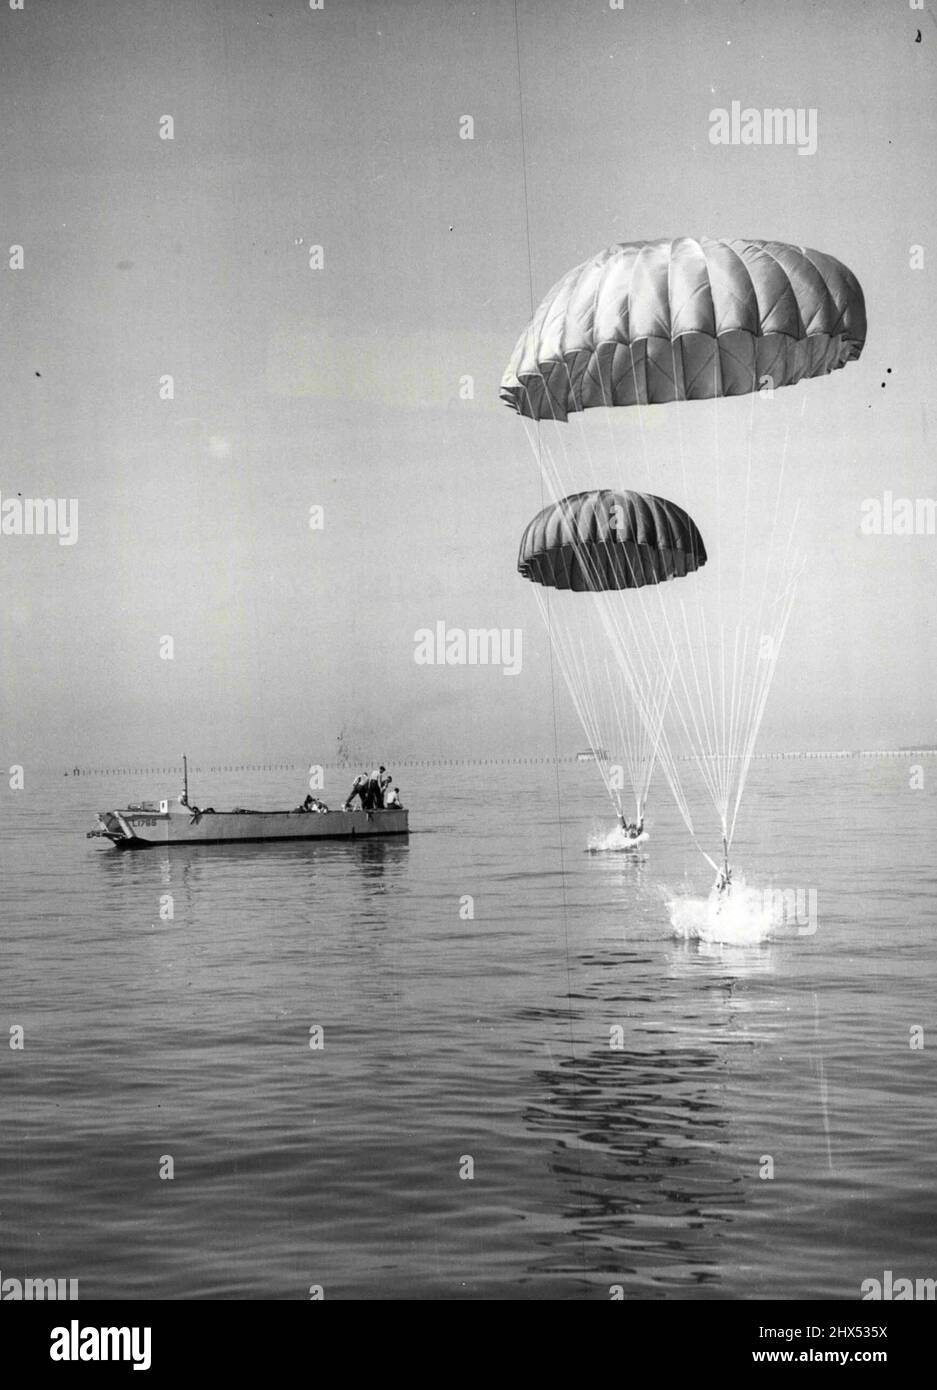 Plongée extra-haute - avec une éclaboussure colossale, Royal Marines dans un kit de natation sous-marin, s'est plongé dans la mer d'un R.A.F. Hastings transporte des avions au cours d'un exercice de routine au large de Southsea, Hampshire, aujourd'hui (mardi). Un embarcation en attente. 31 août 1954. Banque D'Images